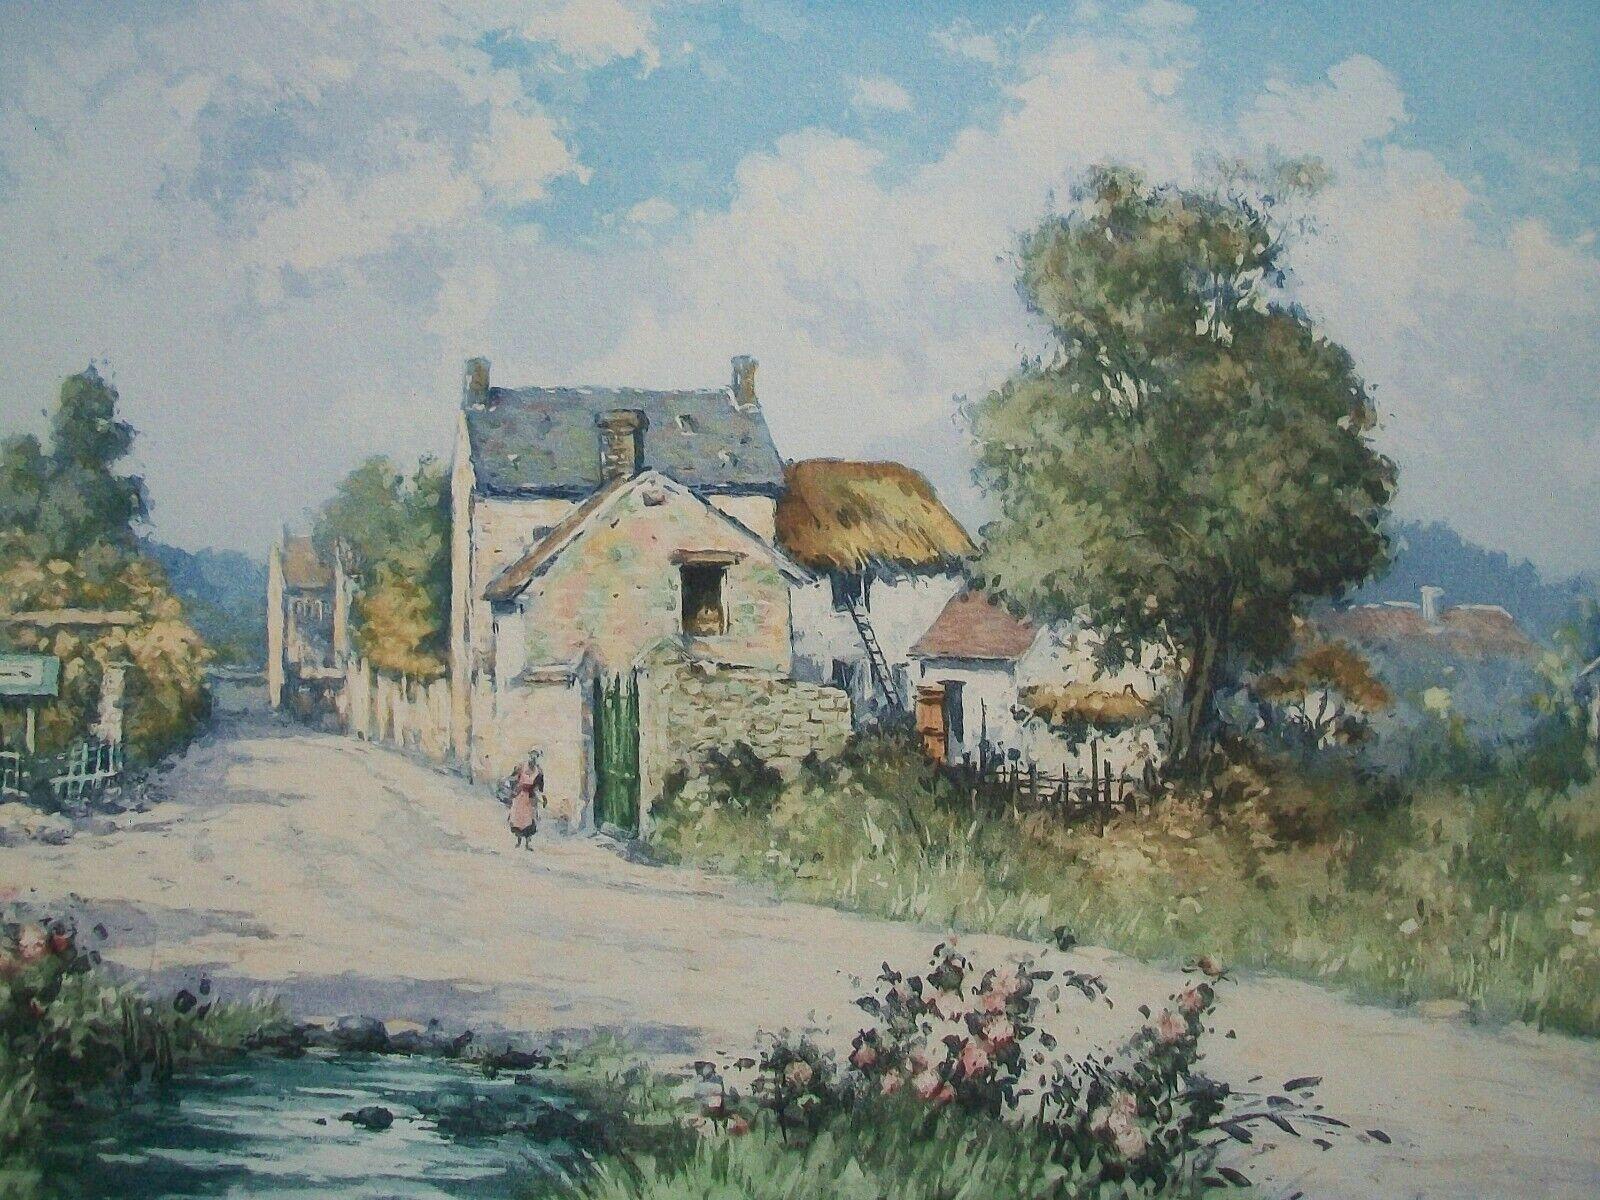 Manuel Robbe (1872-1936) - 'Entrance to Village' (Bretagne) - Impressionistische Radierung mit Aquatinta auf Papier (auf Karton aufgezogen) - zeigt eine einsame Frauenfigur und Häuser in einer Dorflandschaft - rechts unten mit Bleistift signiert -